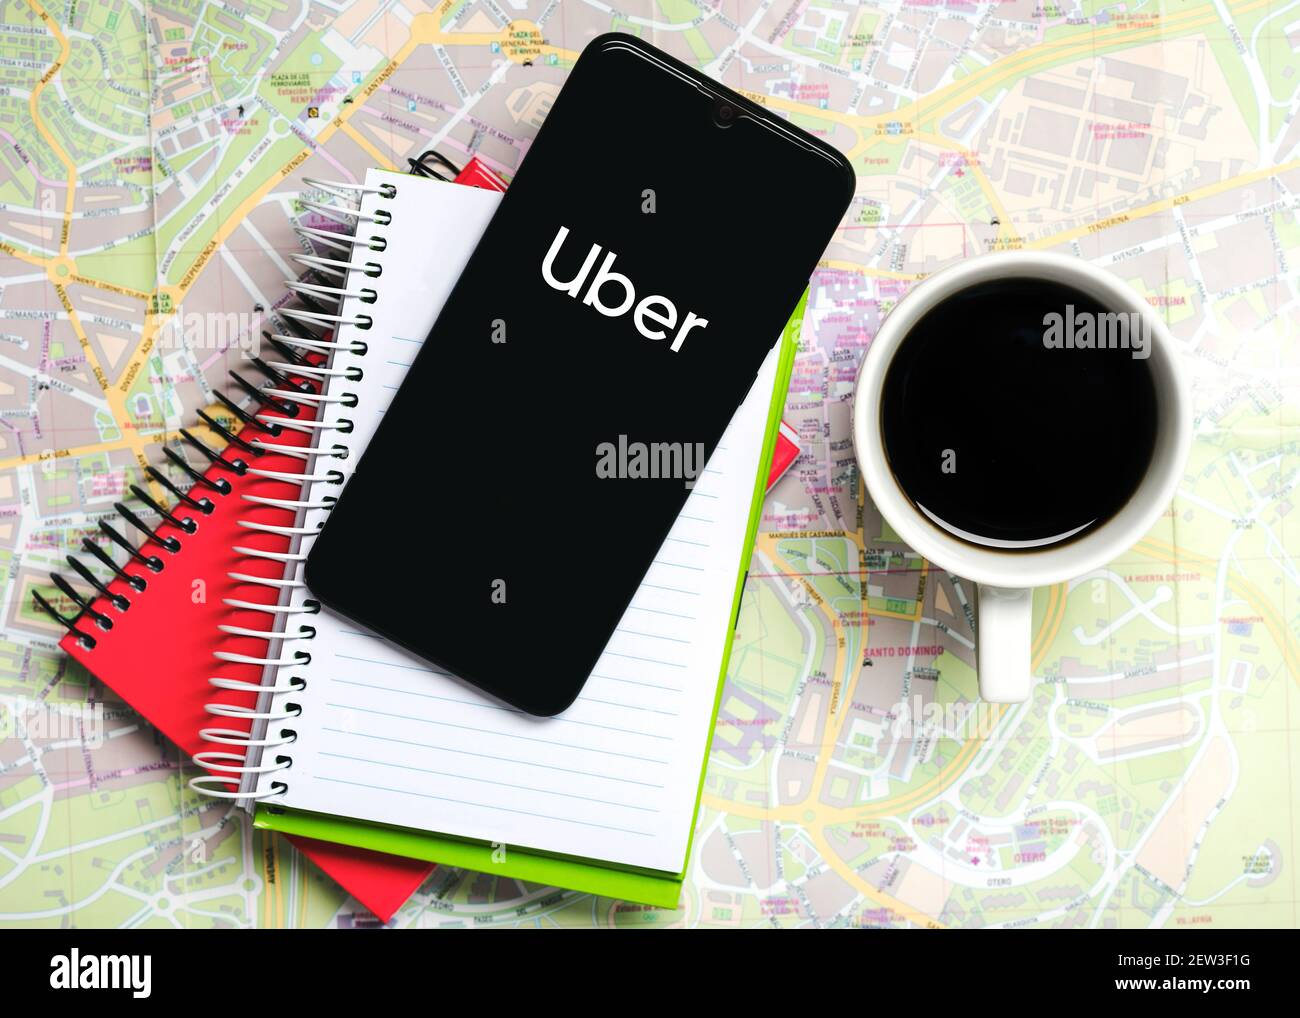 Icono de la aplicación Uber en la pantalla negra del smartphone con portátiles y una taza de café en un mapa de carreteras Foto de stock